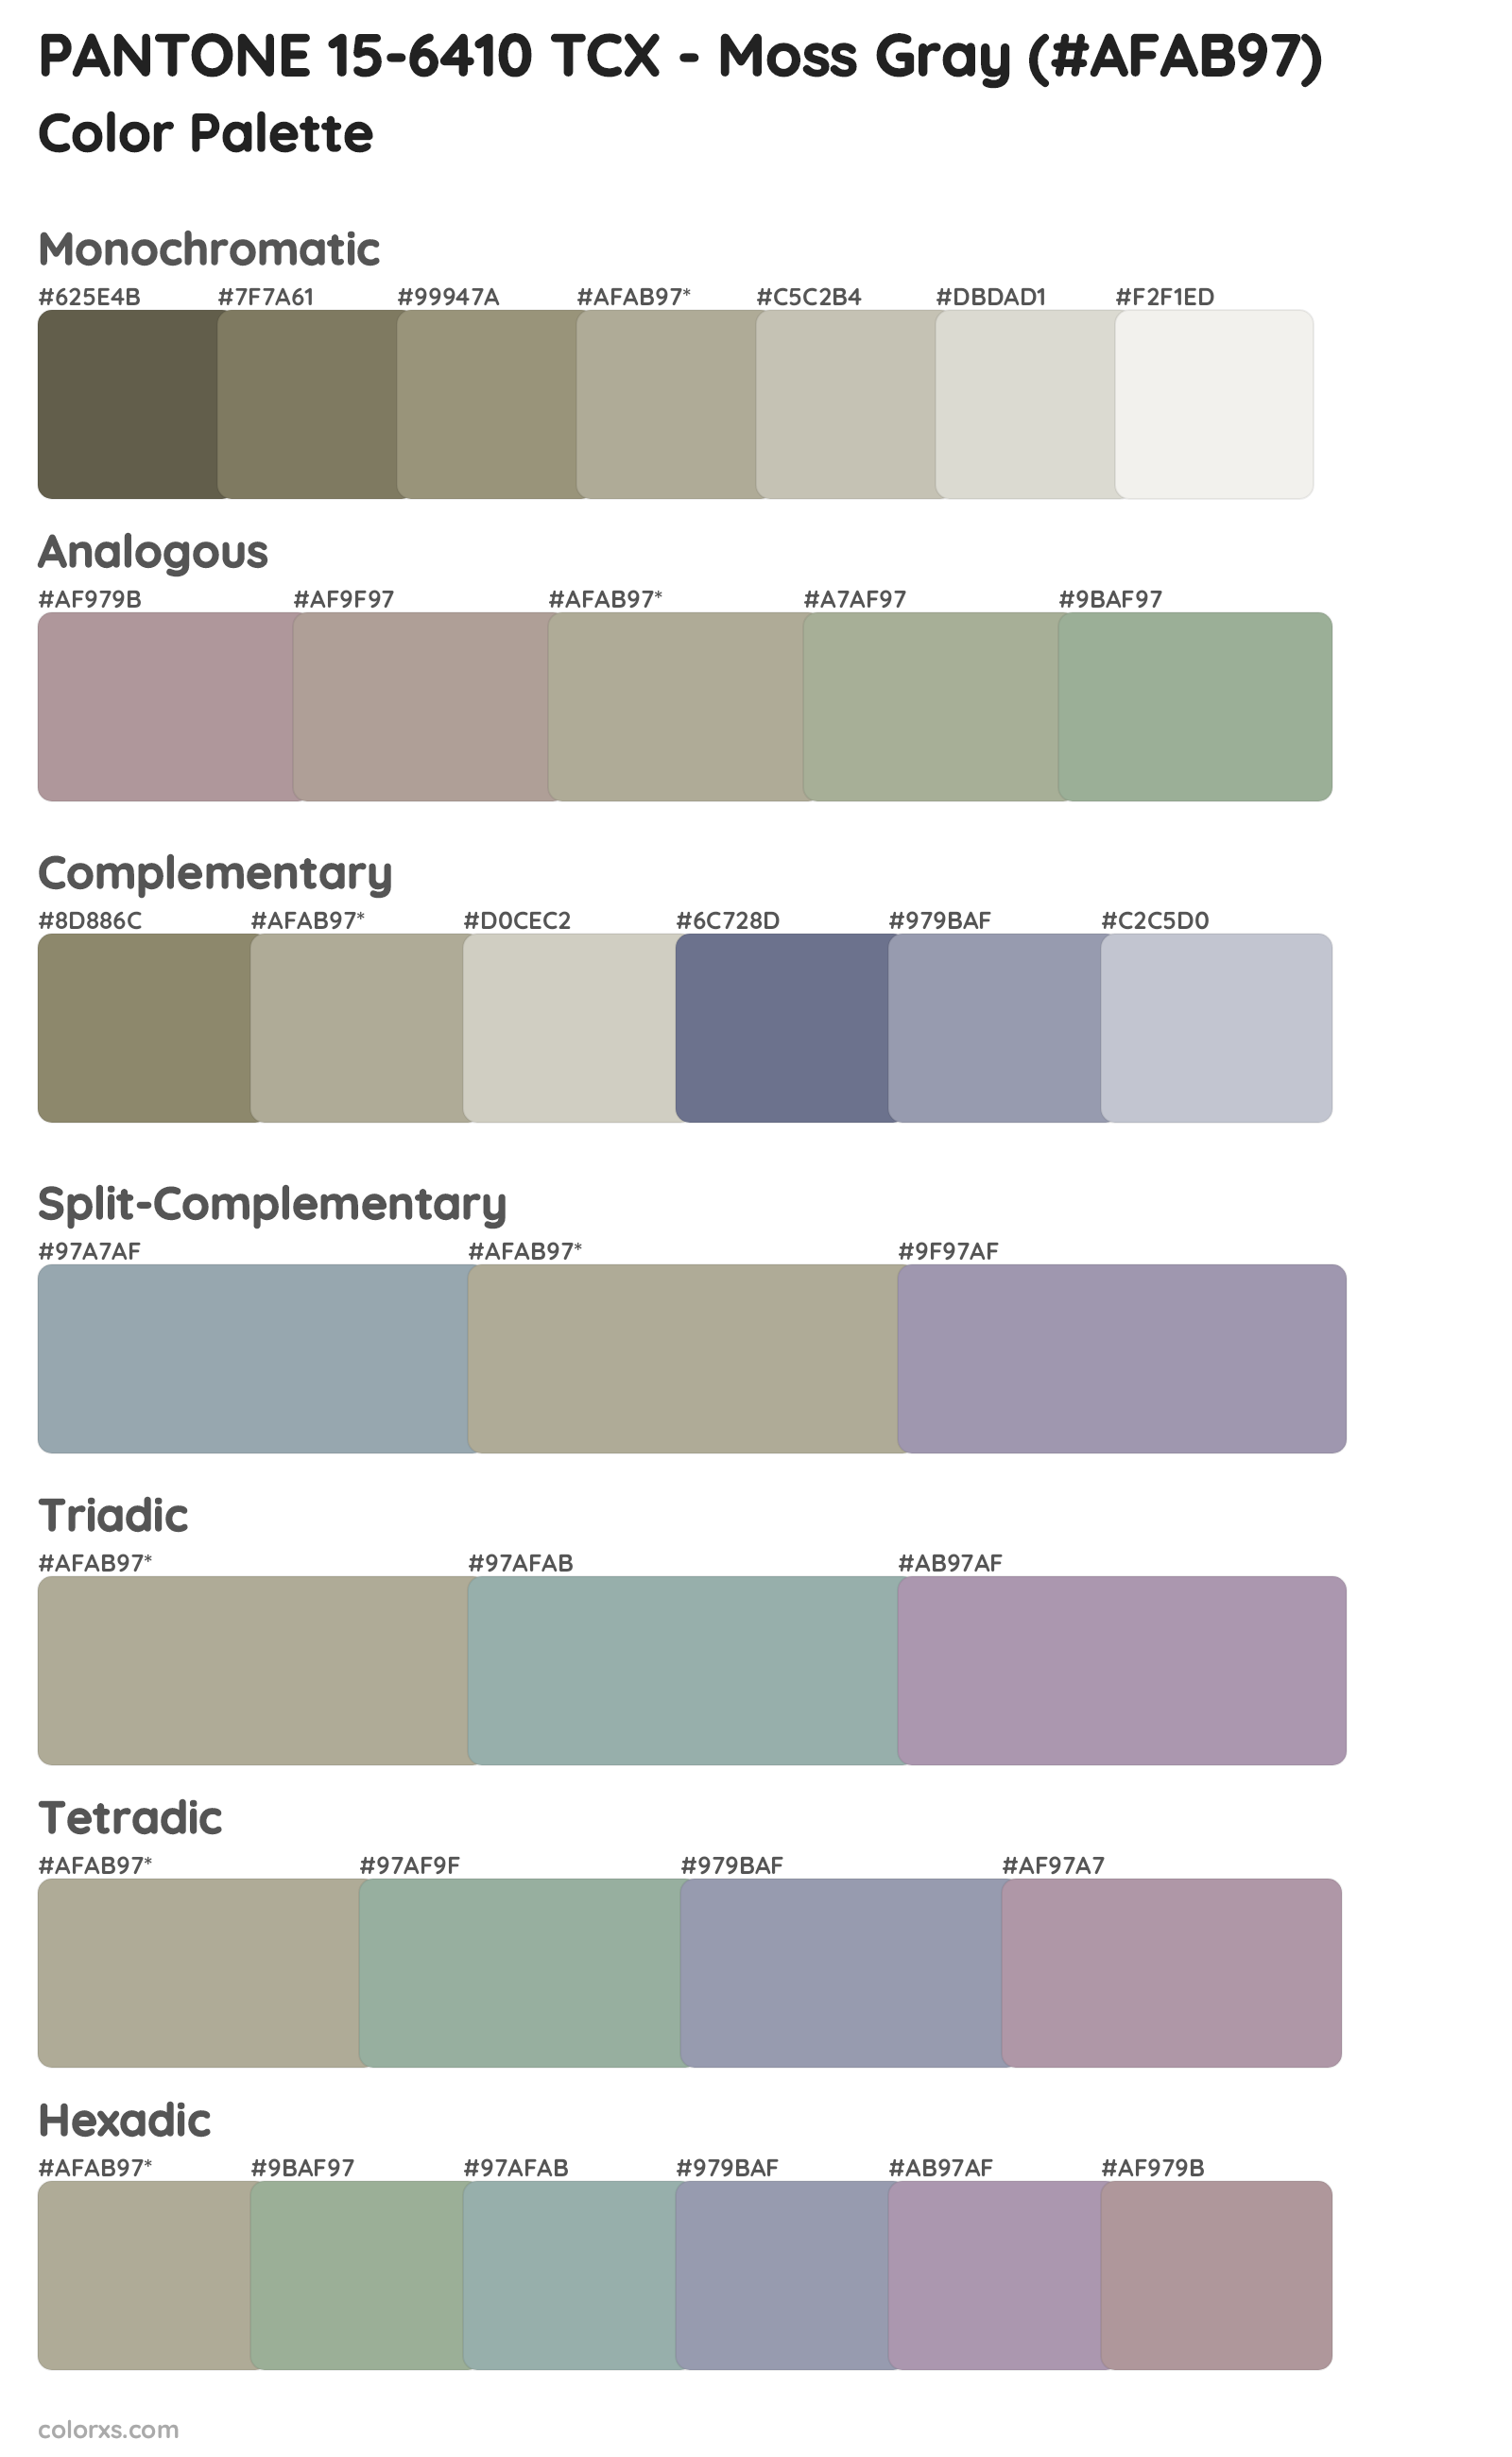 PANTONE 15-6410 TCX - Moss Gray Color Scheme Palettes